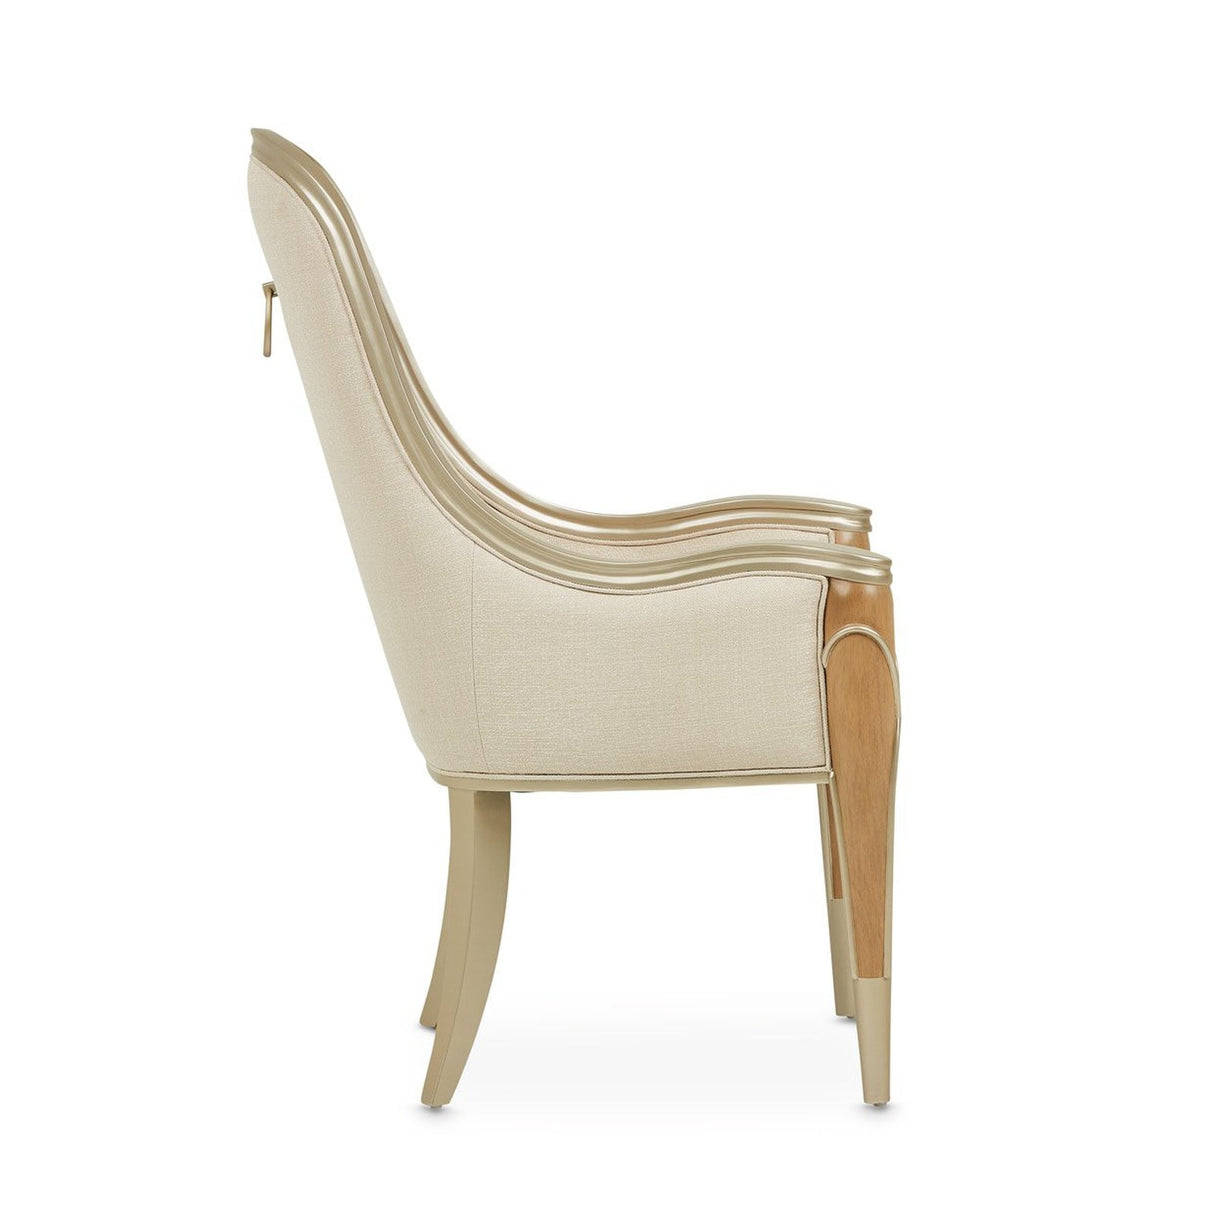 Michael Amini Villa Cherie Caramel Arm Chair - Home Elegance USA